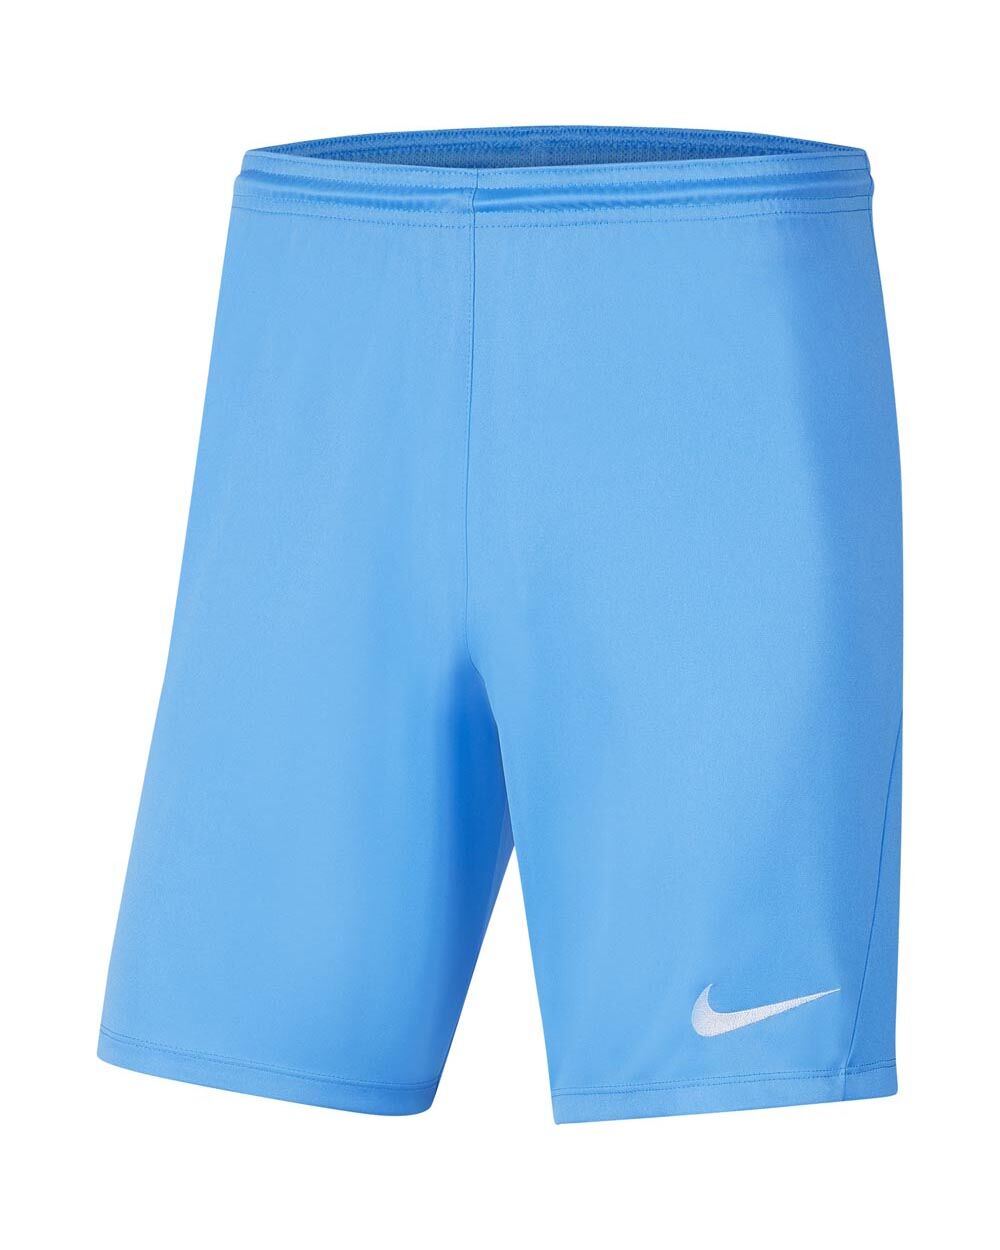 Pantalón corto Nike Park III Azul Cielo Hombre - BV6855-412